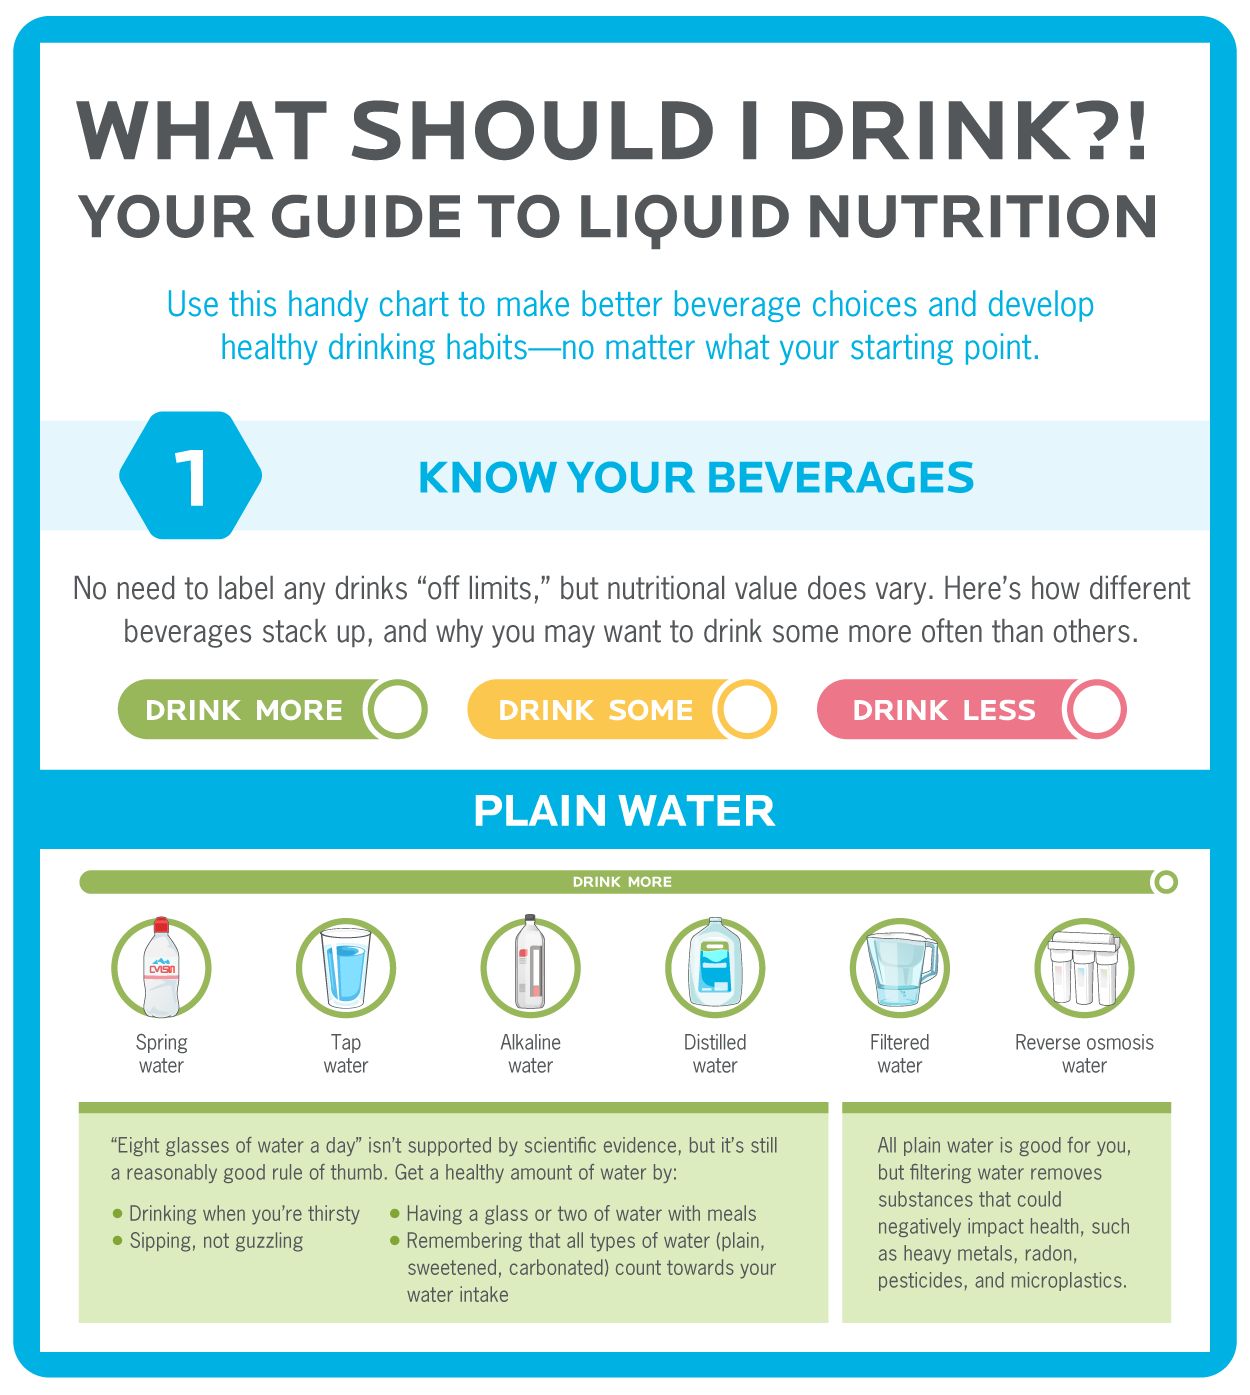 图片为“我应该喝什么?”液体营养信息图表指南的封面。